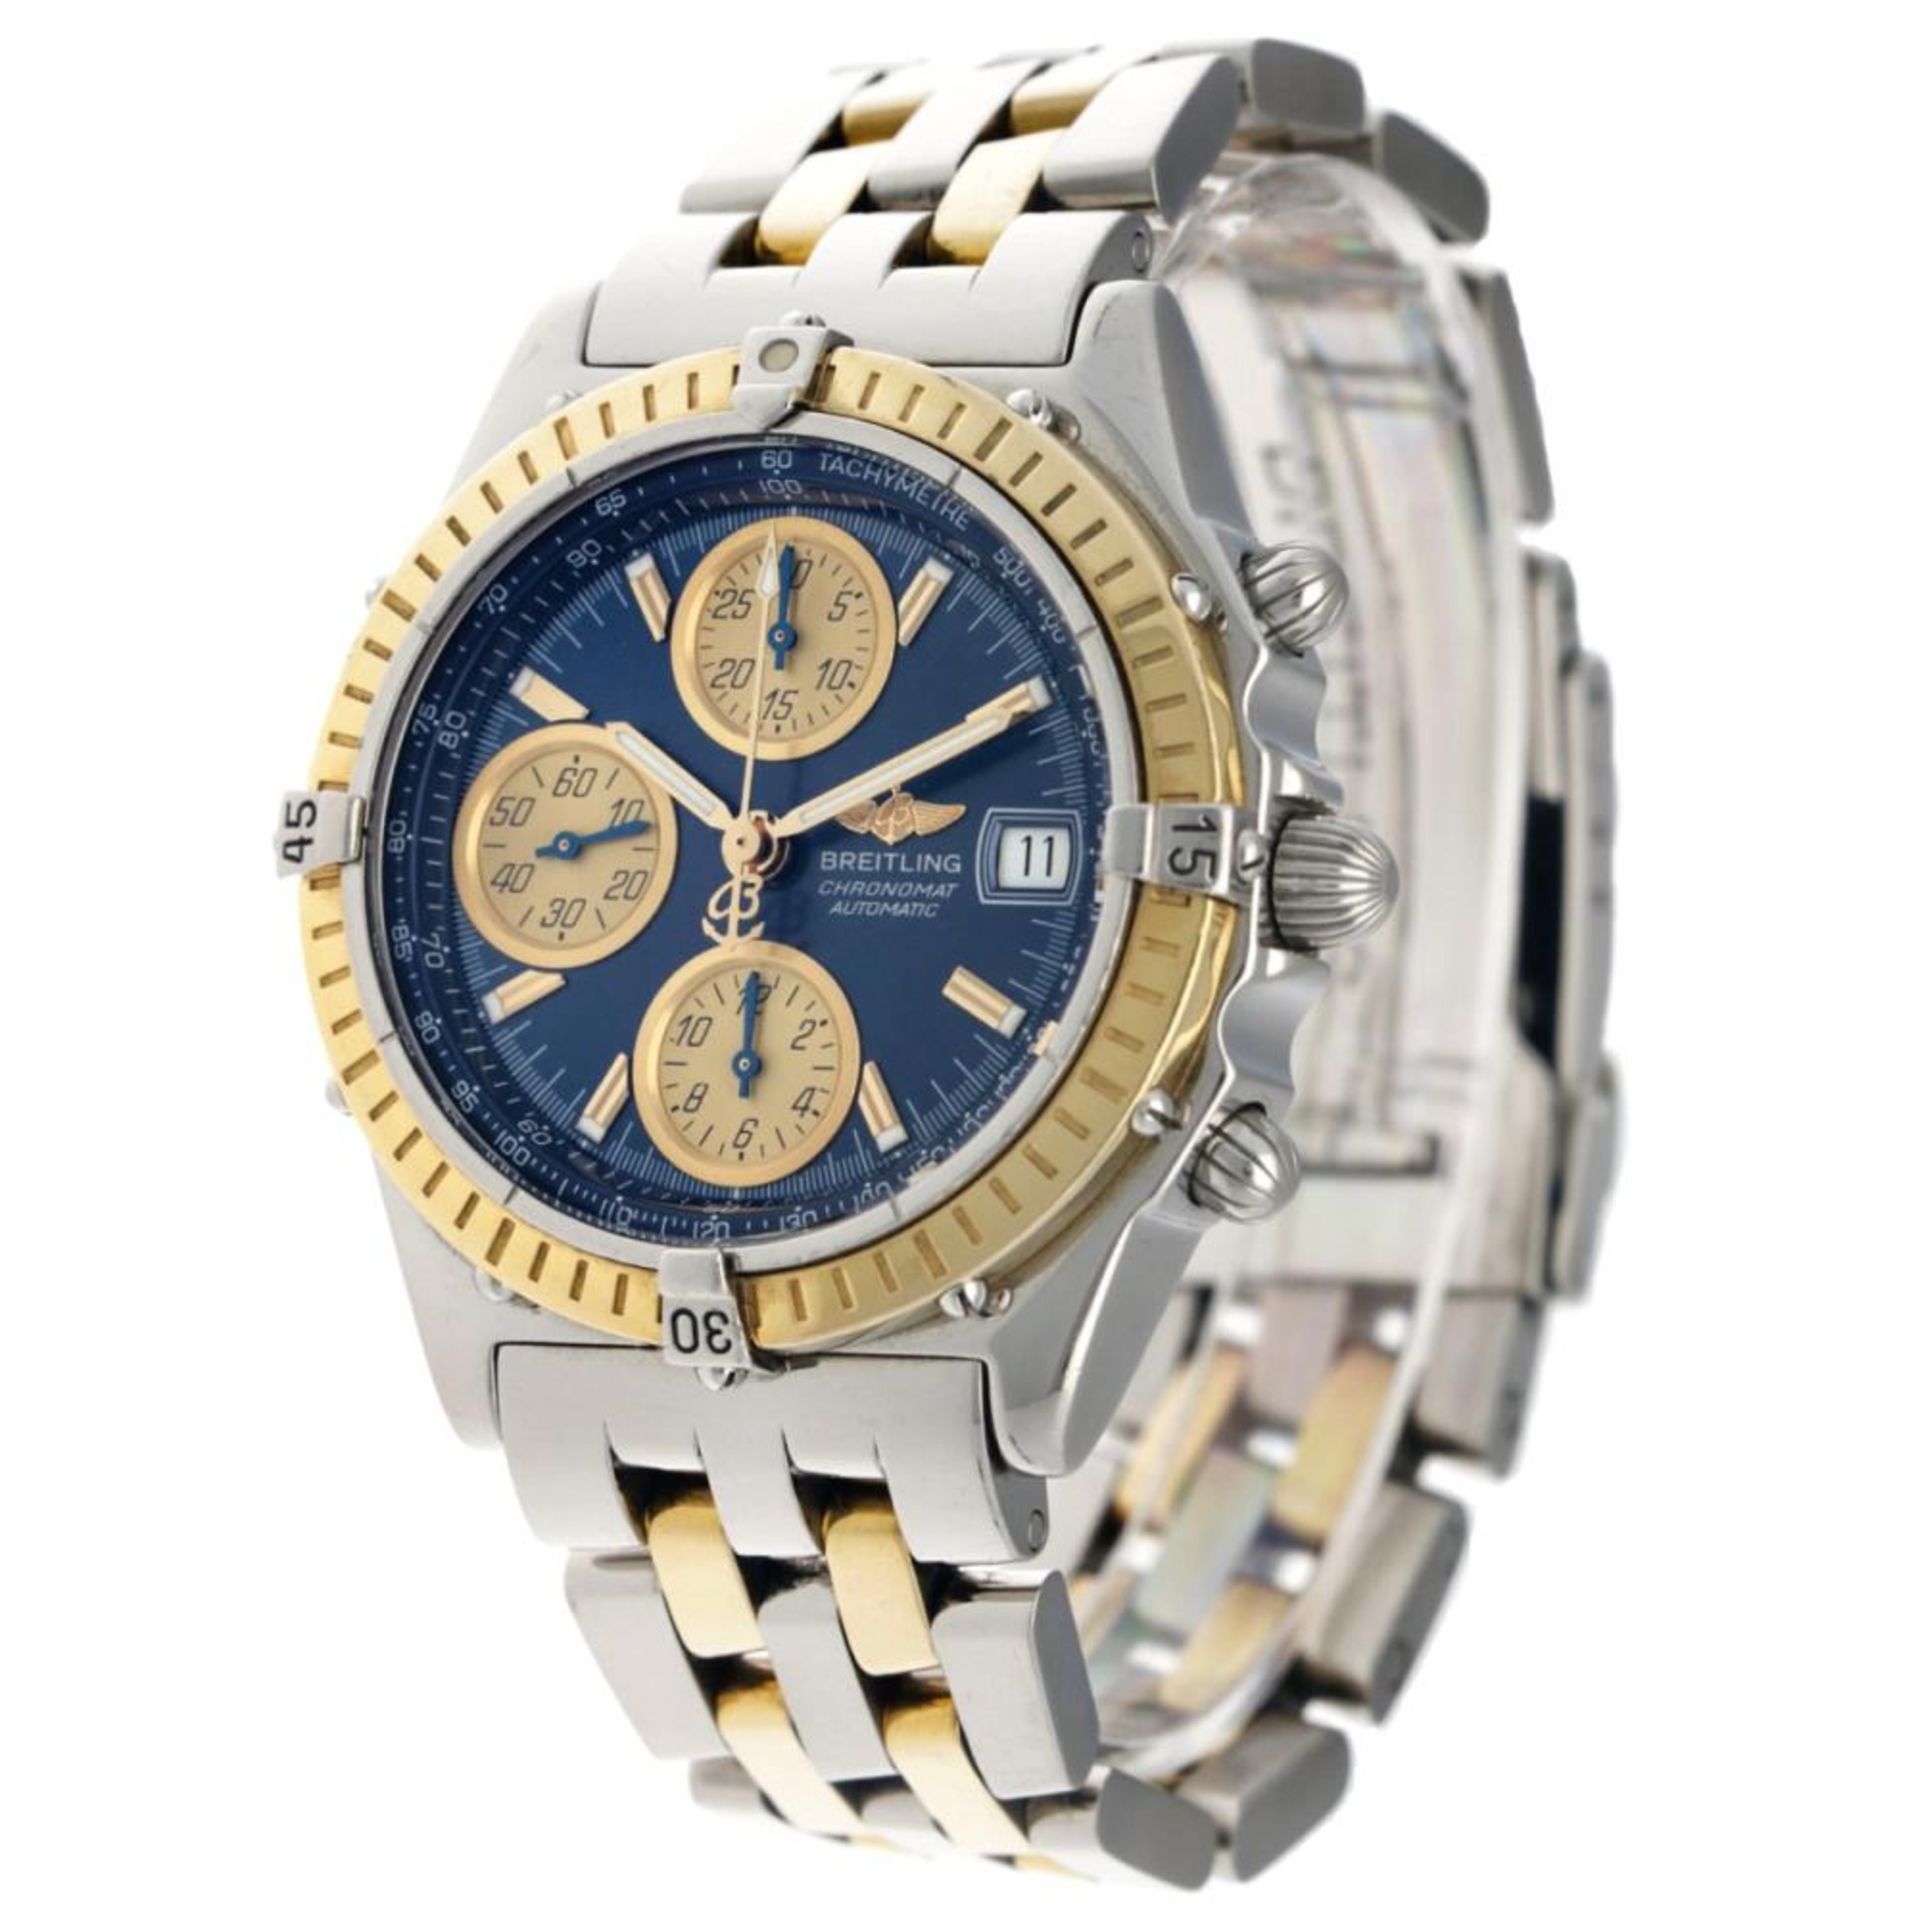 Breitling Chronomat D13350 - Men's watch - 2000. - Image 2 of 6